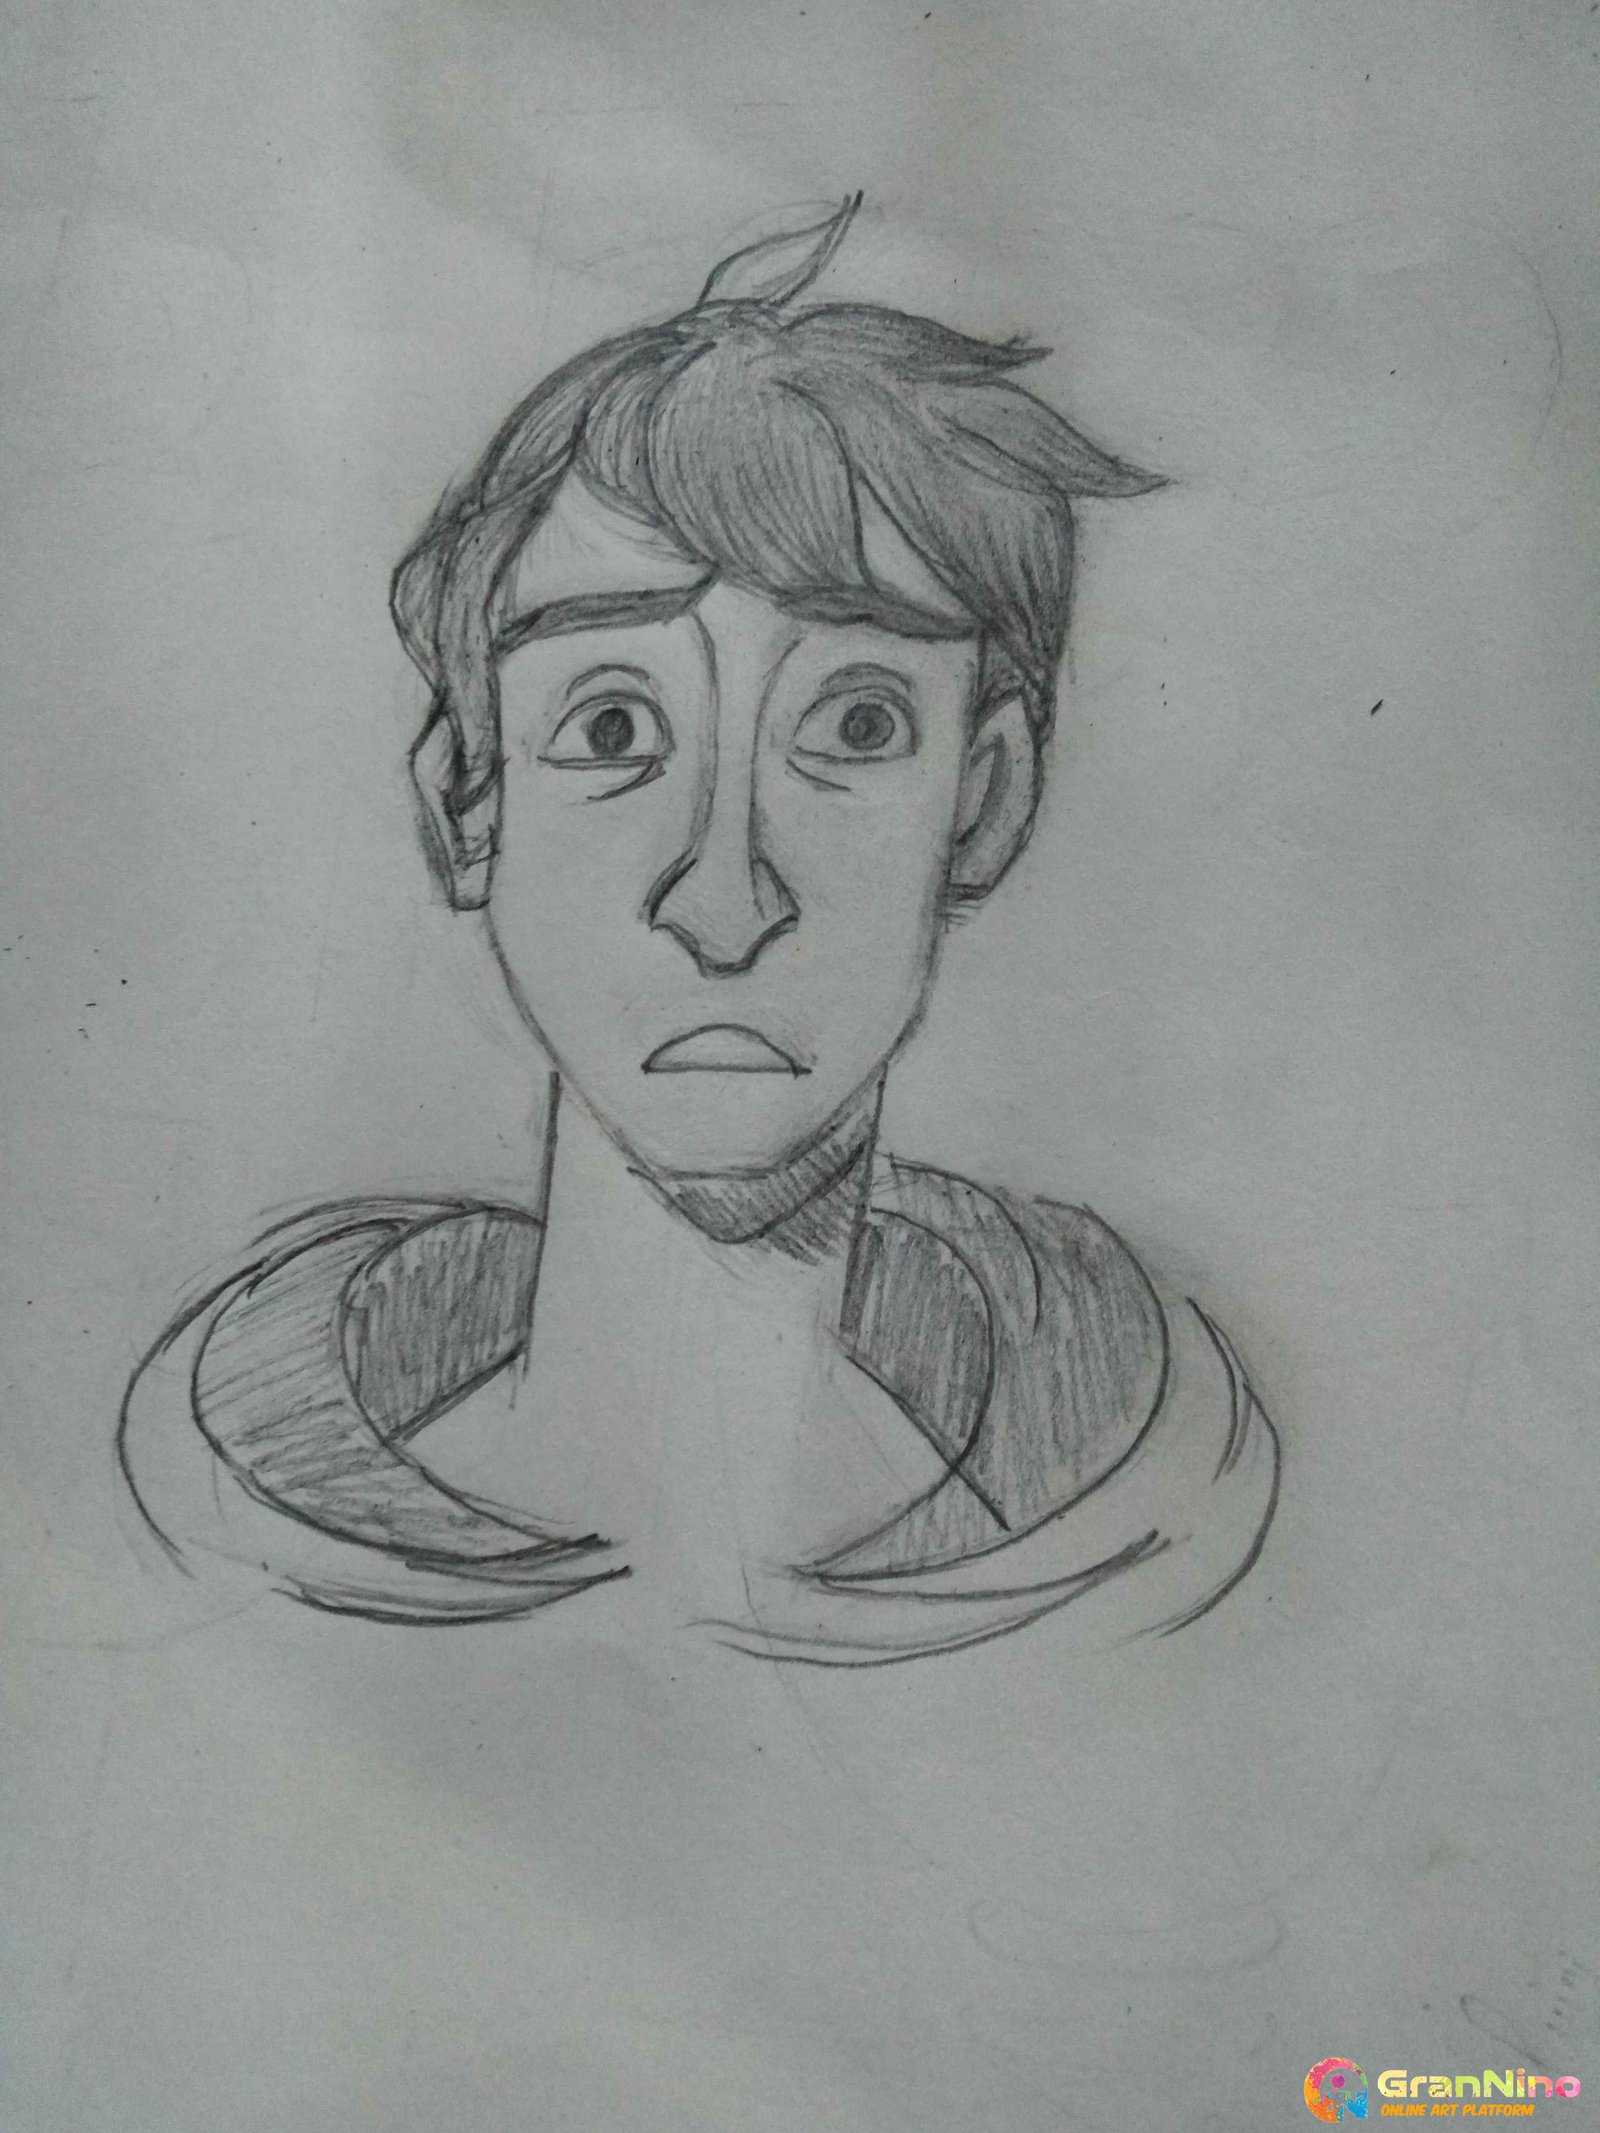 Pencil sketch of Korean boy by Mohib Khurram at Coroflotcom